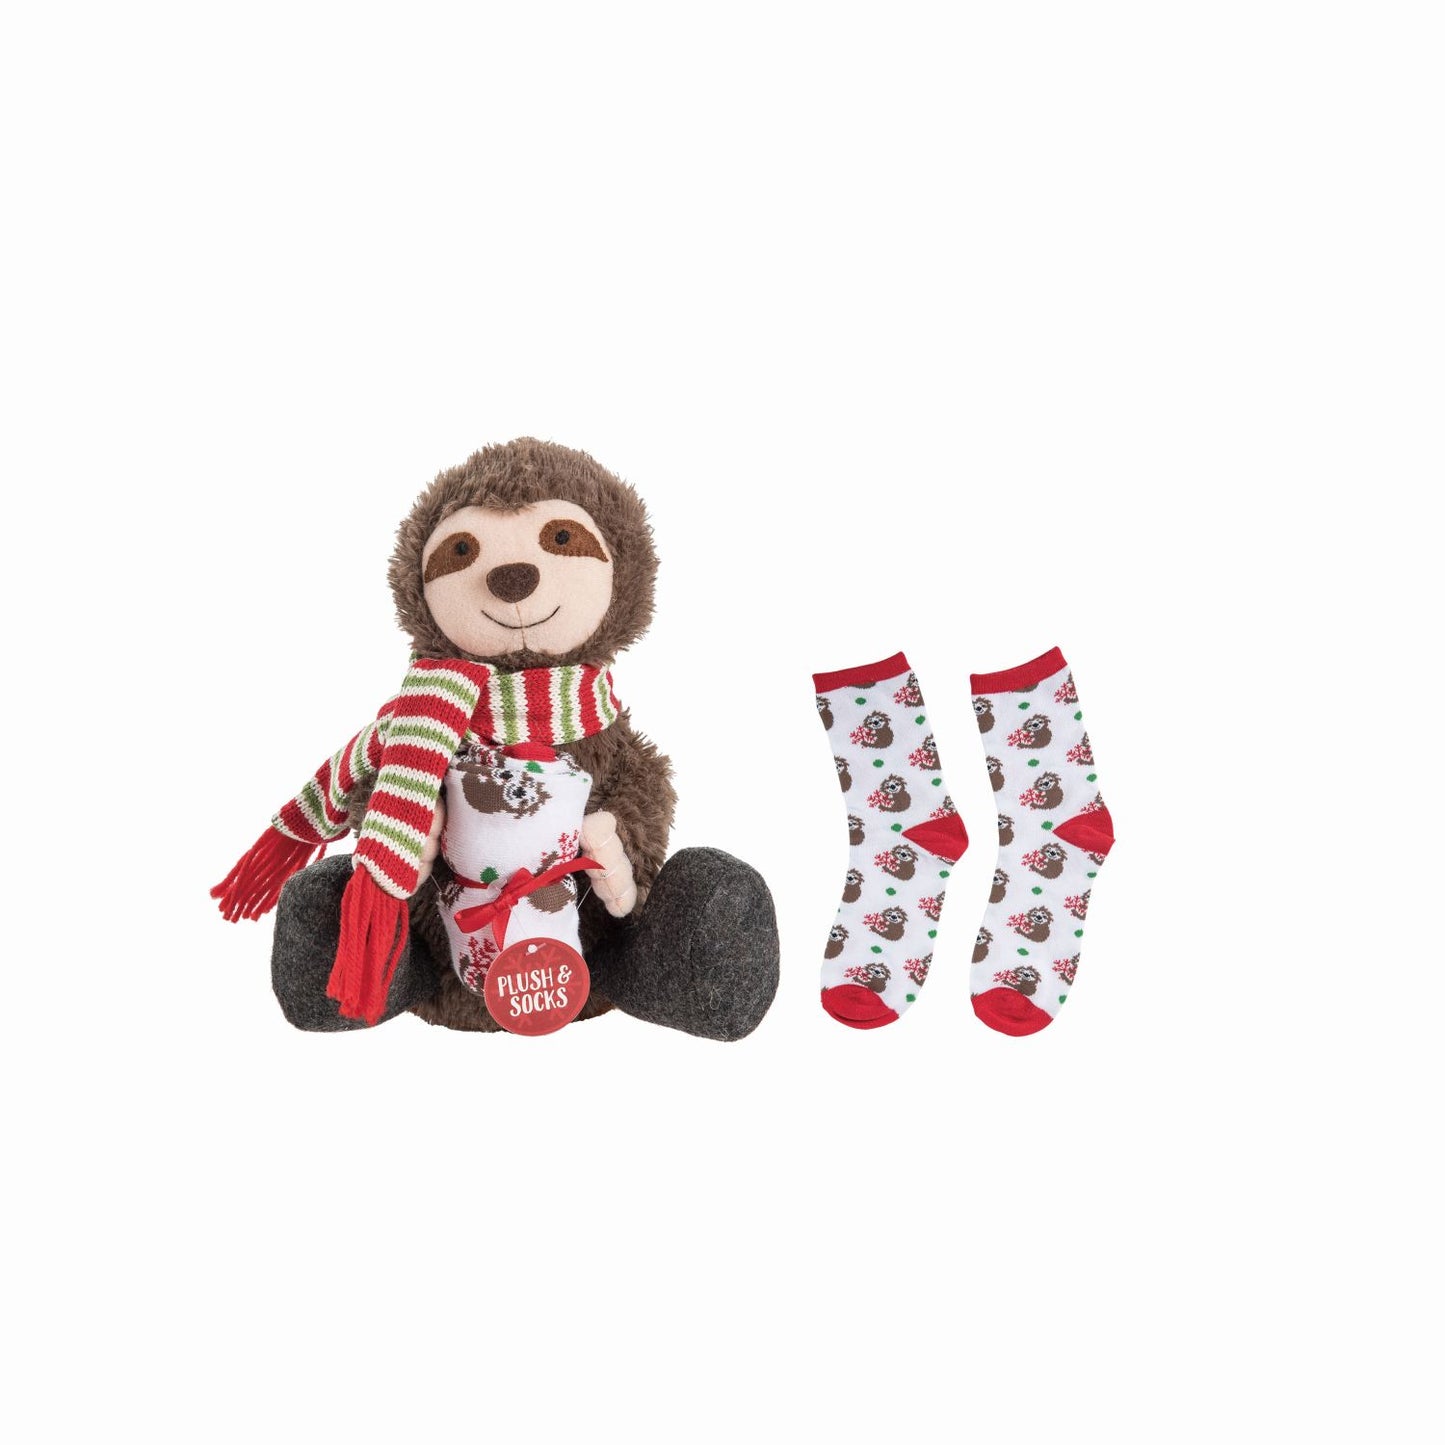 Transpac Plush Sloth With Socks